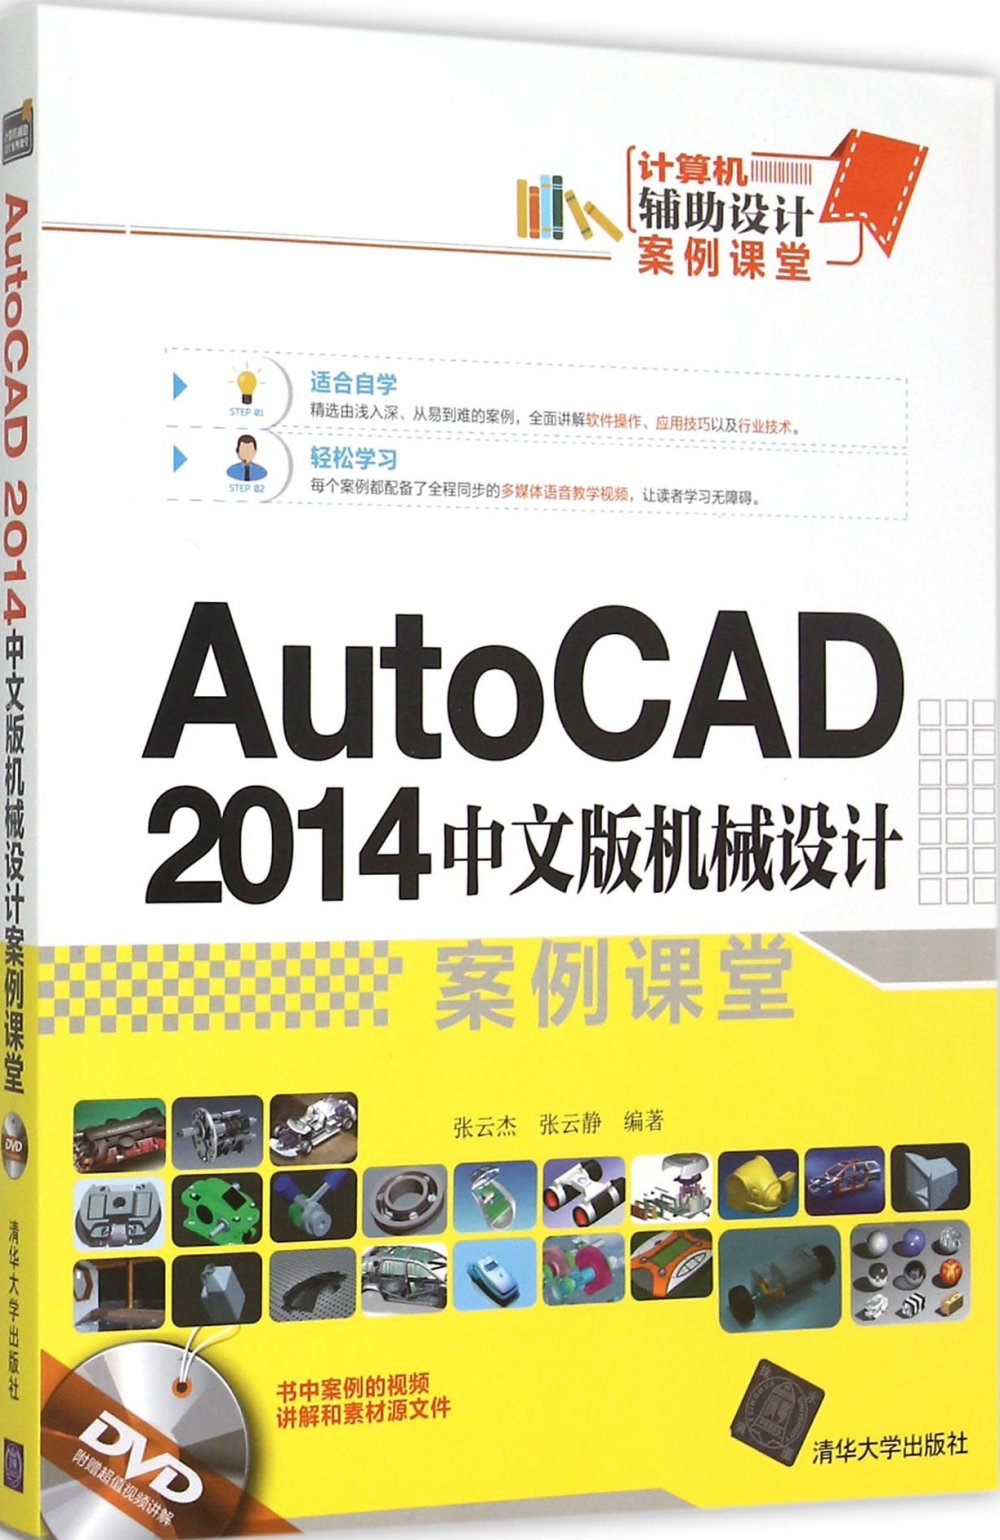 AutoCAD 2014中文版機械設計案例課堂